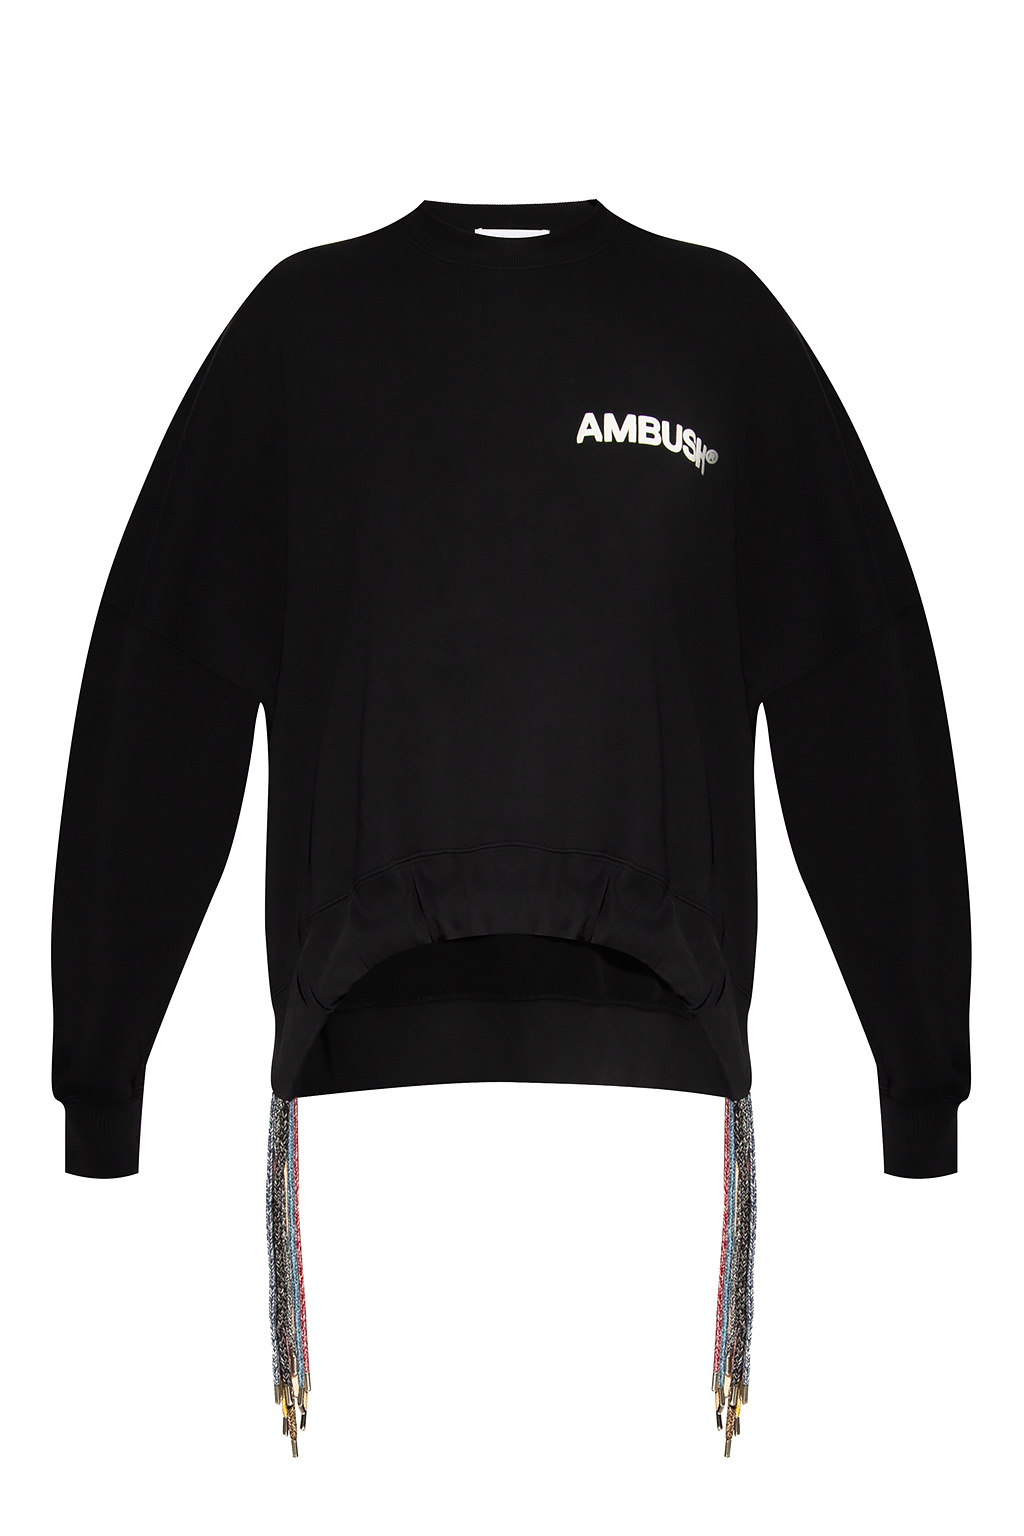 Ambush sweatshirt And with logo